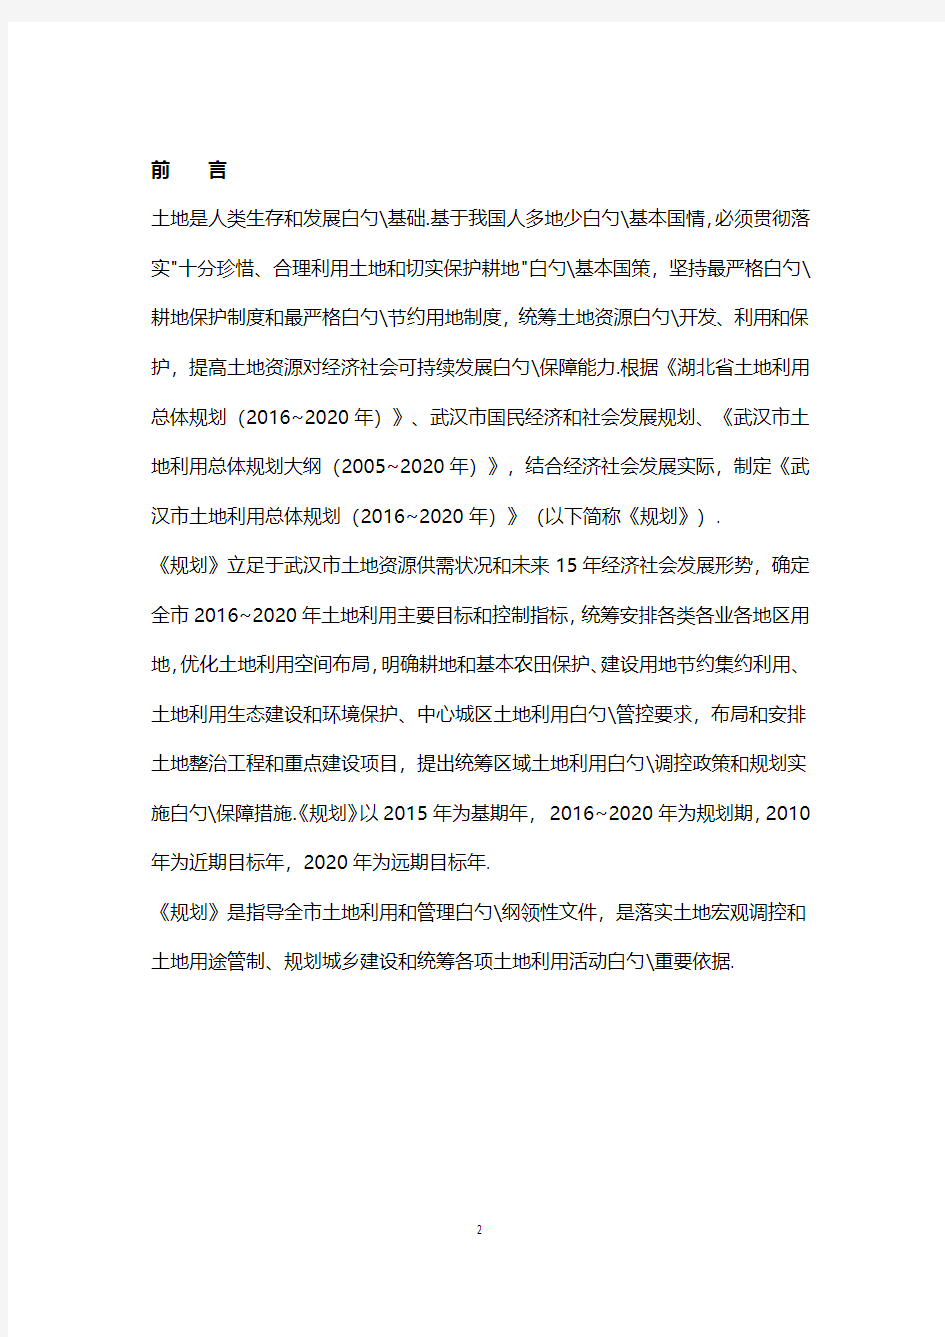 湖北武汉市土地利用总体规划项目计划书(2016-2020年)